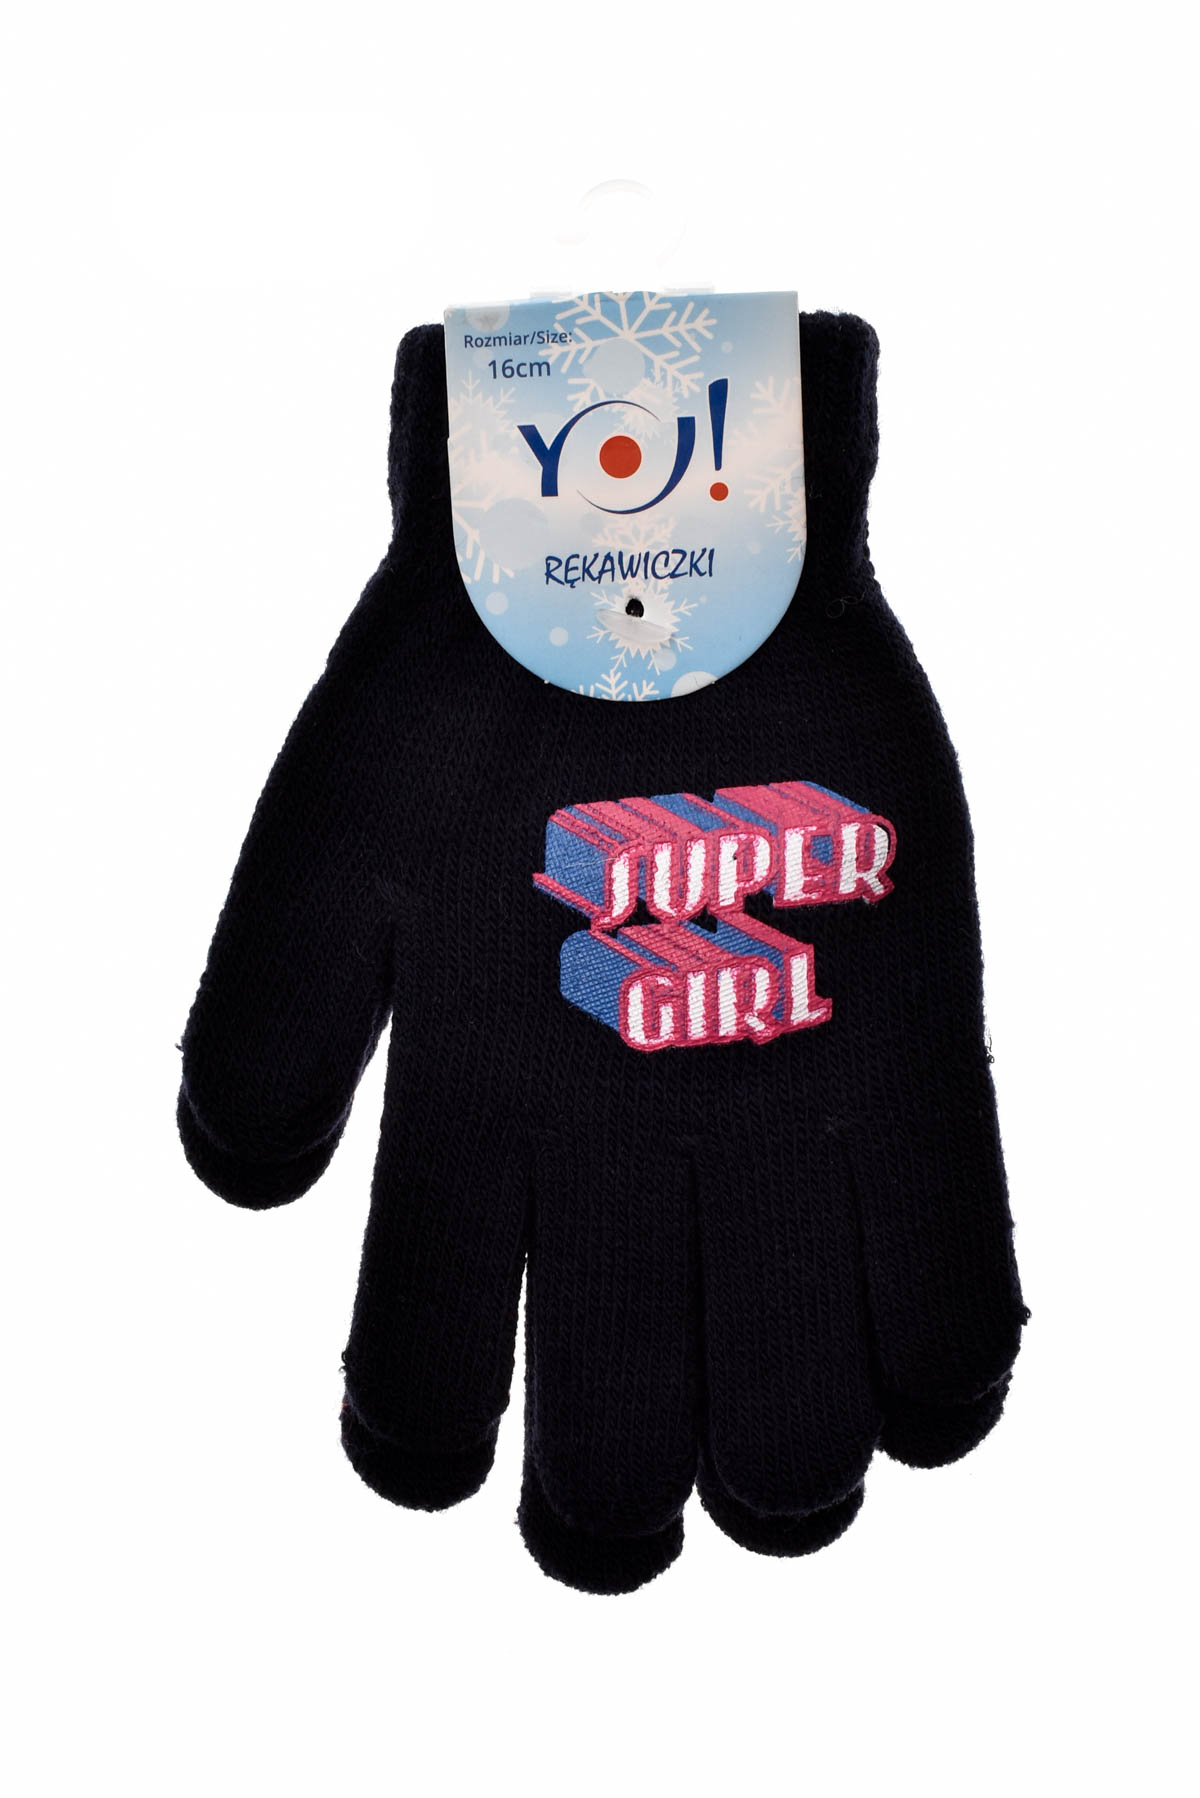 Mănuși pentru copii -Yo! CLub - 0